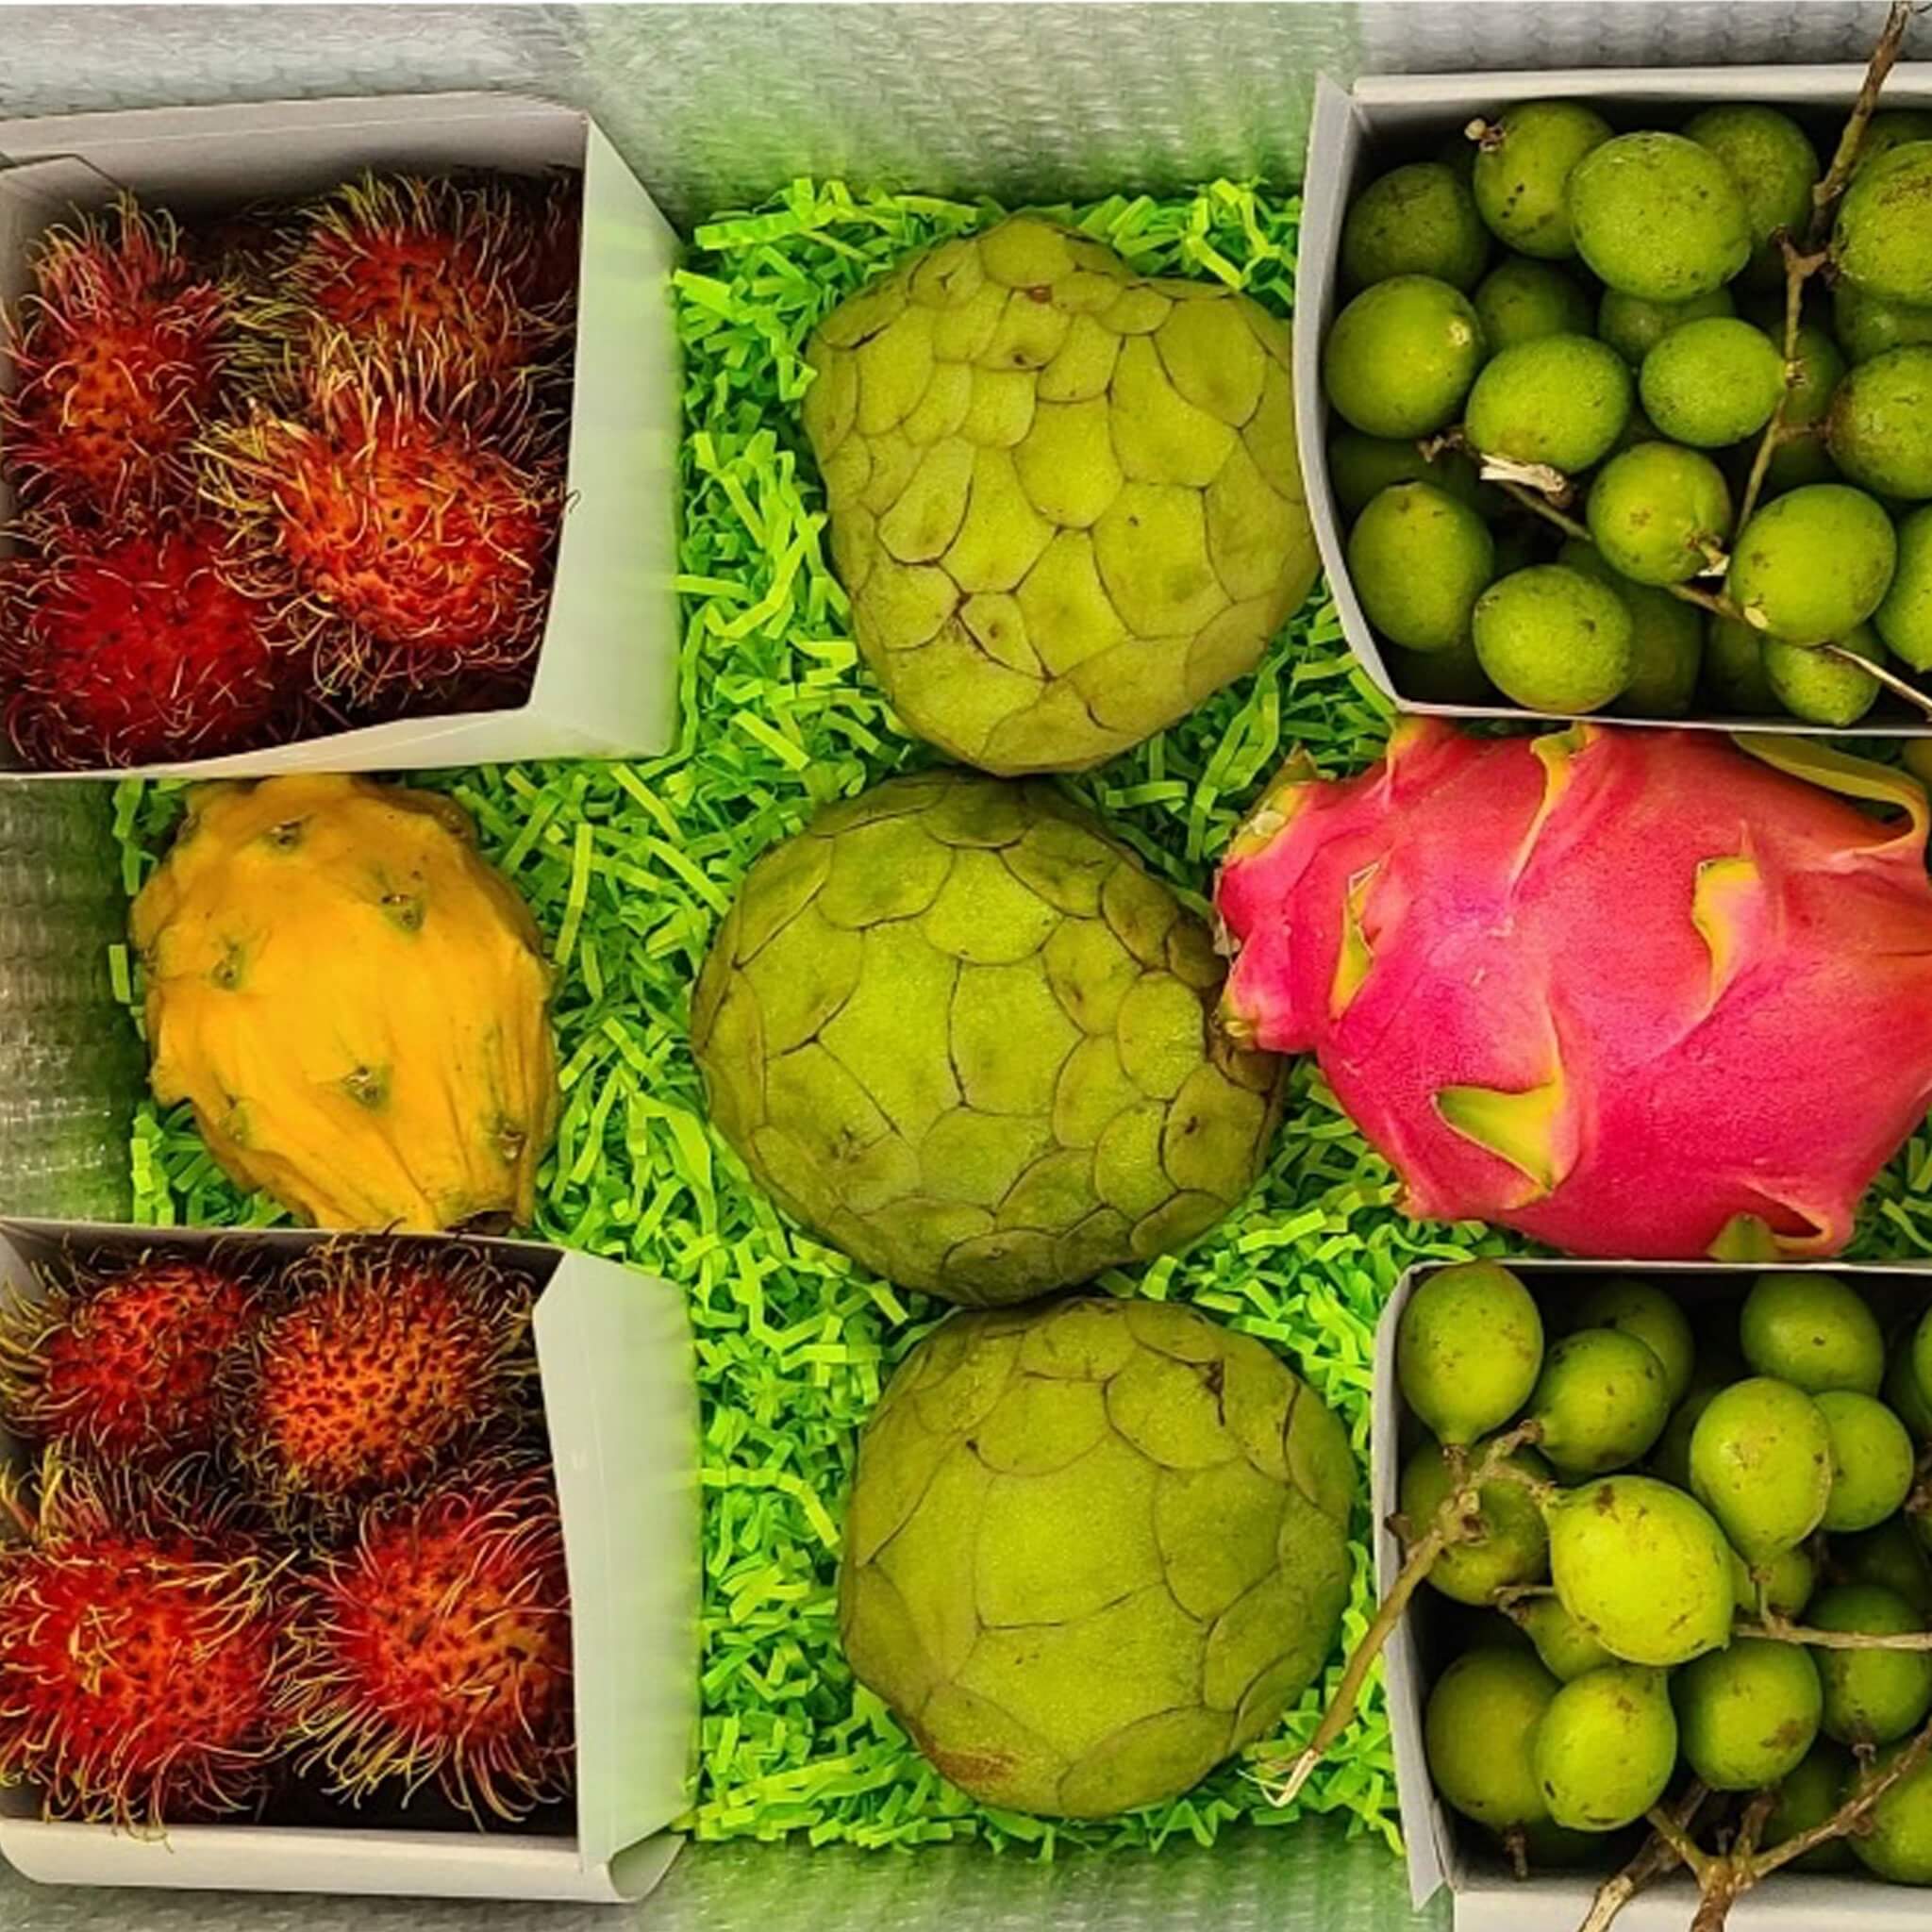 Guam's Tropical Fruits, Citrus & Other Native Fruit